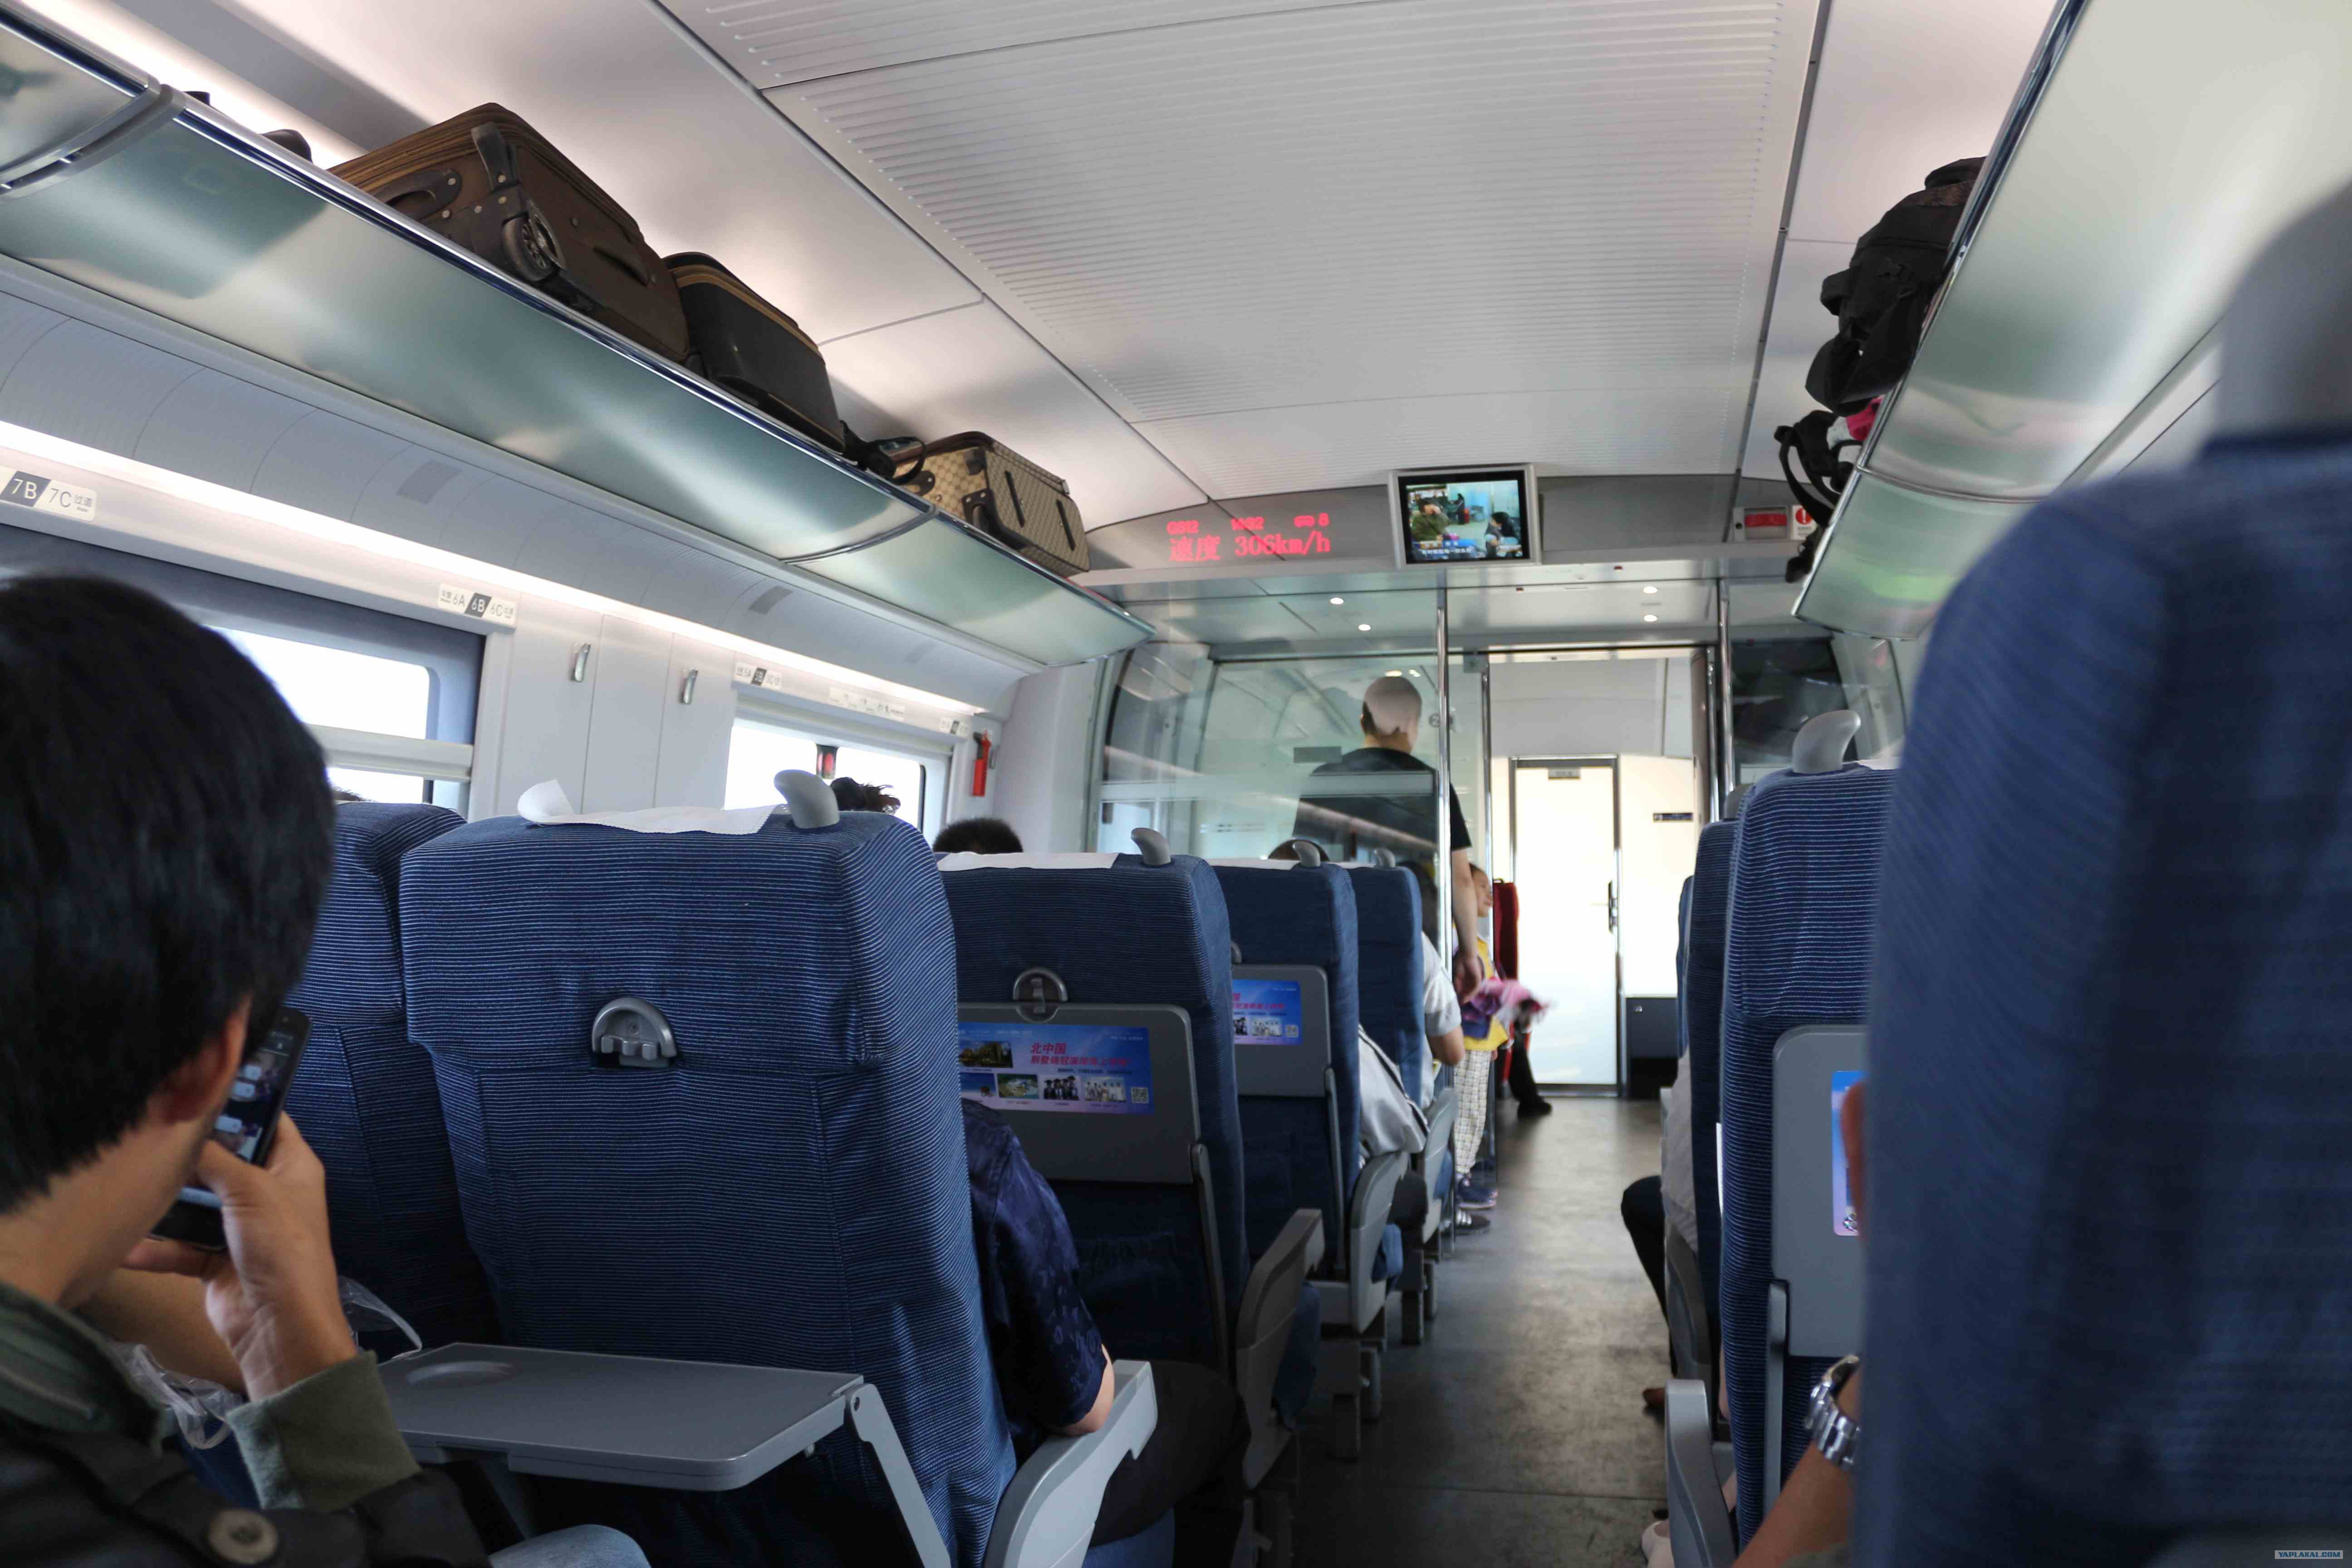 сидячие места в поезде москва белгород